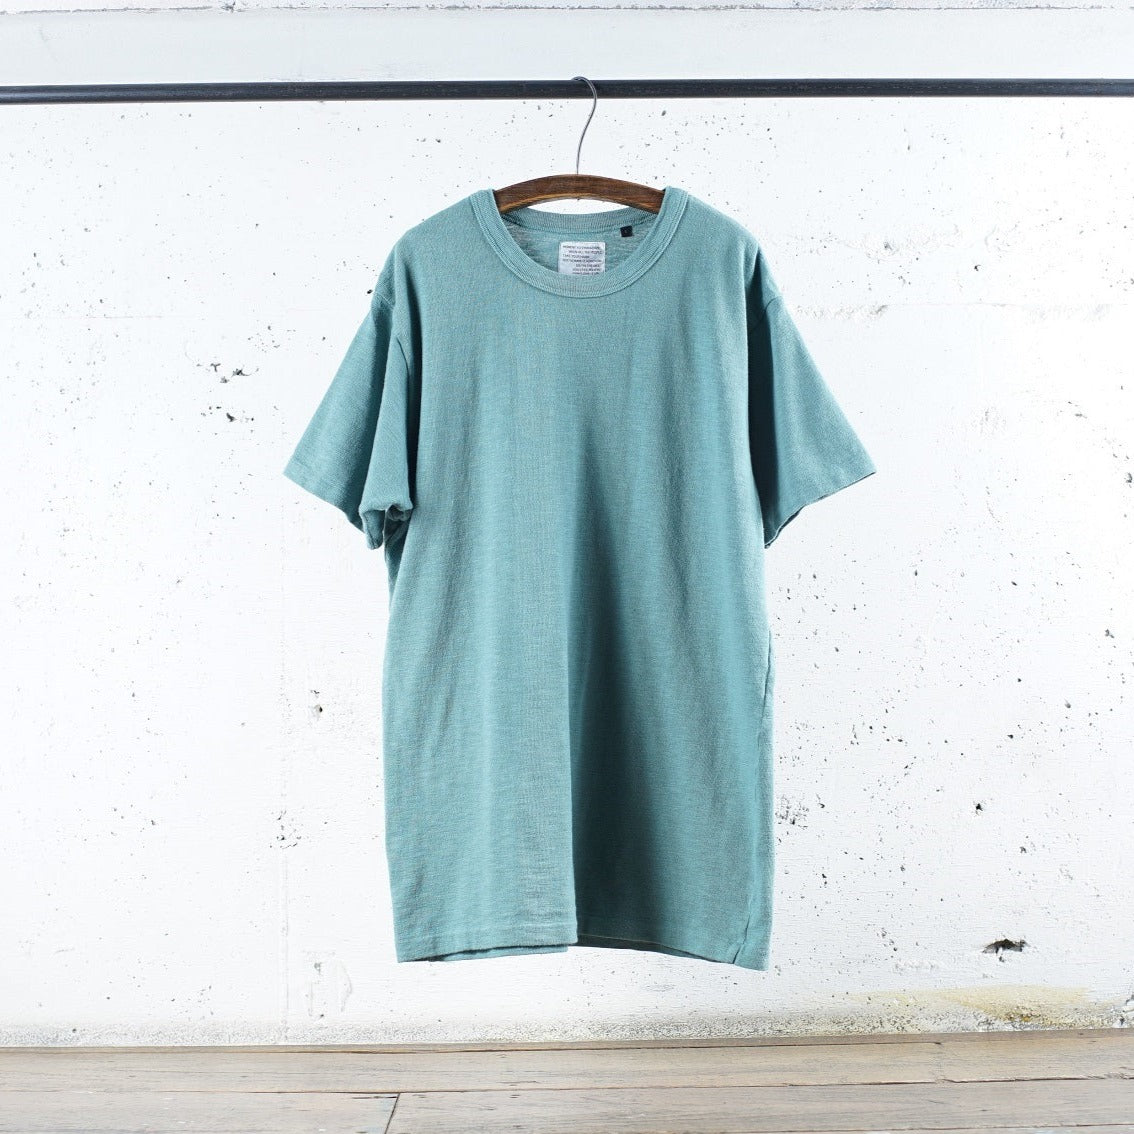 ディバイスファクトリー | ロングセラー Tシャツ メンズ レディース 豊富なカラーバリエーション 最高の着心地 Gray Green / M